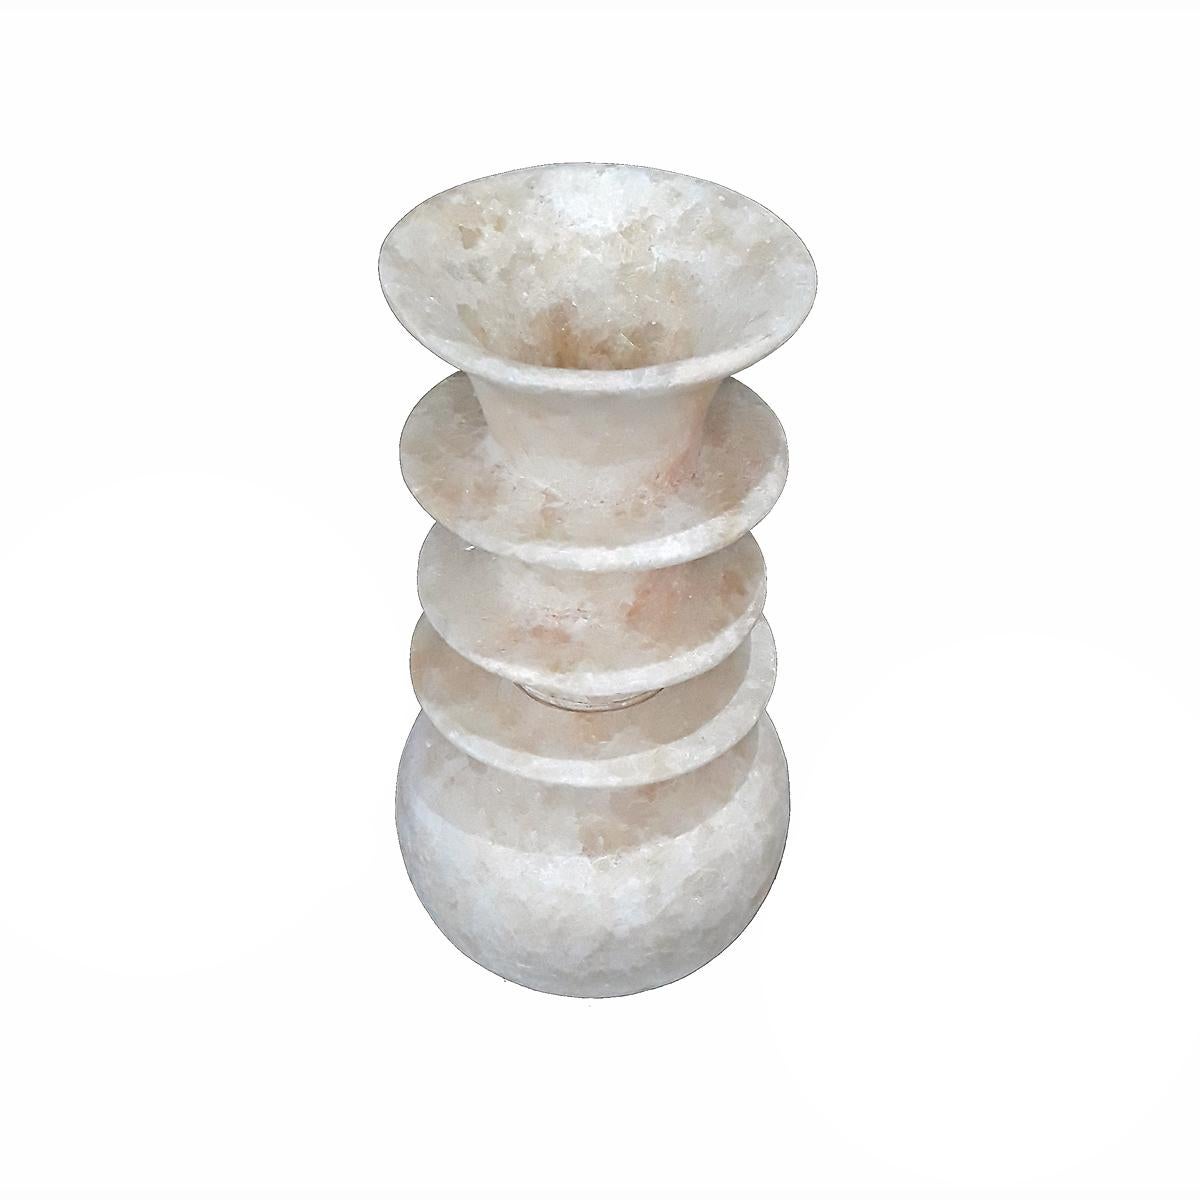 Un vase en albâtre, fabriqué à la main à Louxor, en Égypte. Deux pièces, avec une ouverture à la base. Il permet d'utiliser la pièce comme une lampe ou un écran pour les lumières à faible intensité (conversion professionnelle recommandée). 

Le vase